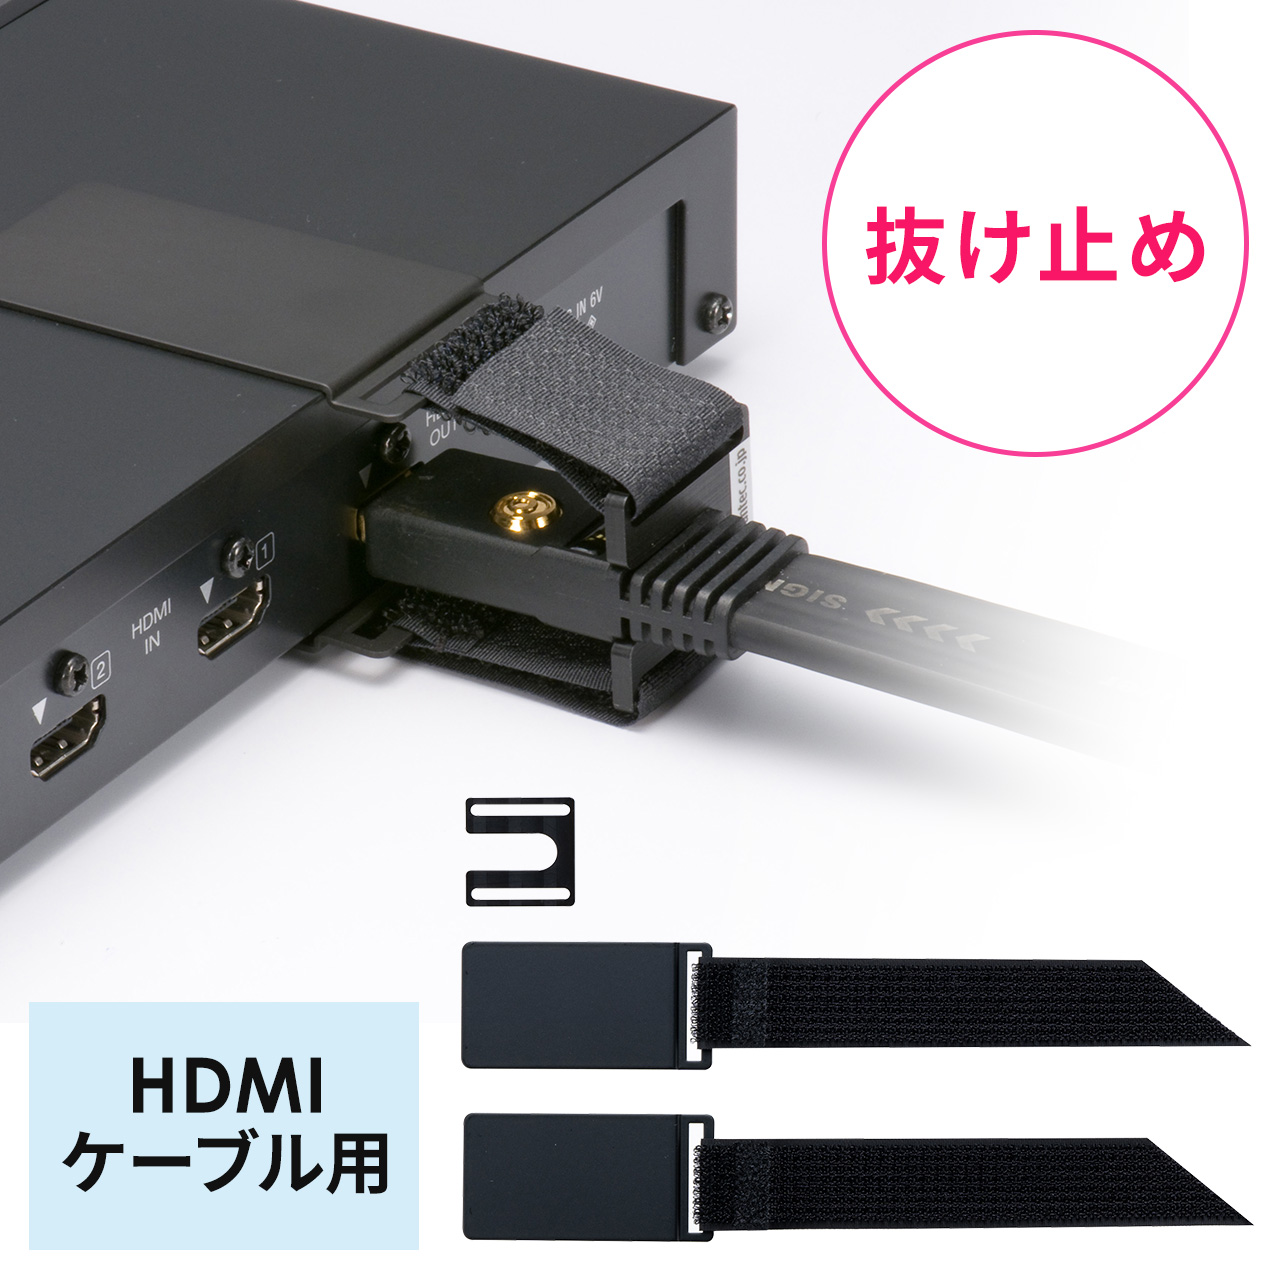 抜け止めツール HDMIケーブル用 セキュリティ アヴァンテック 200